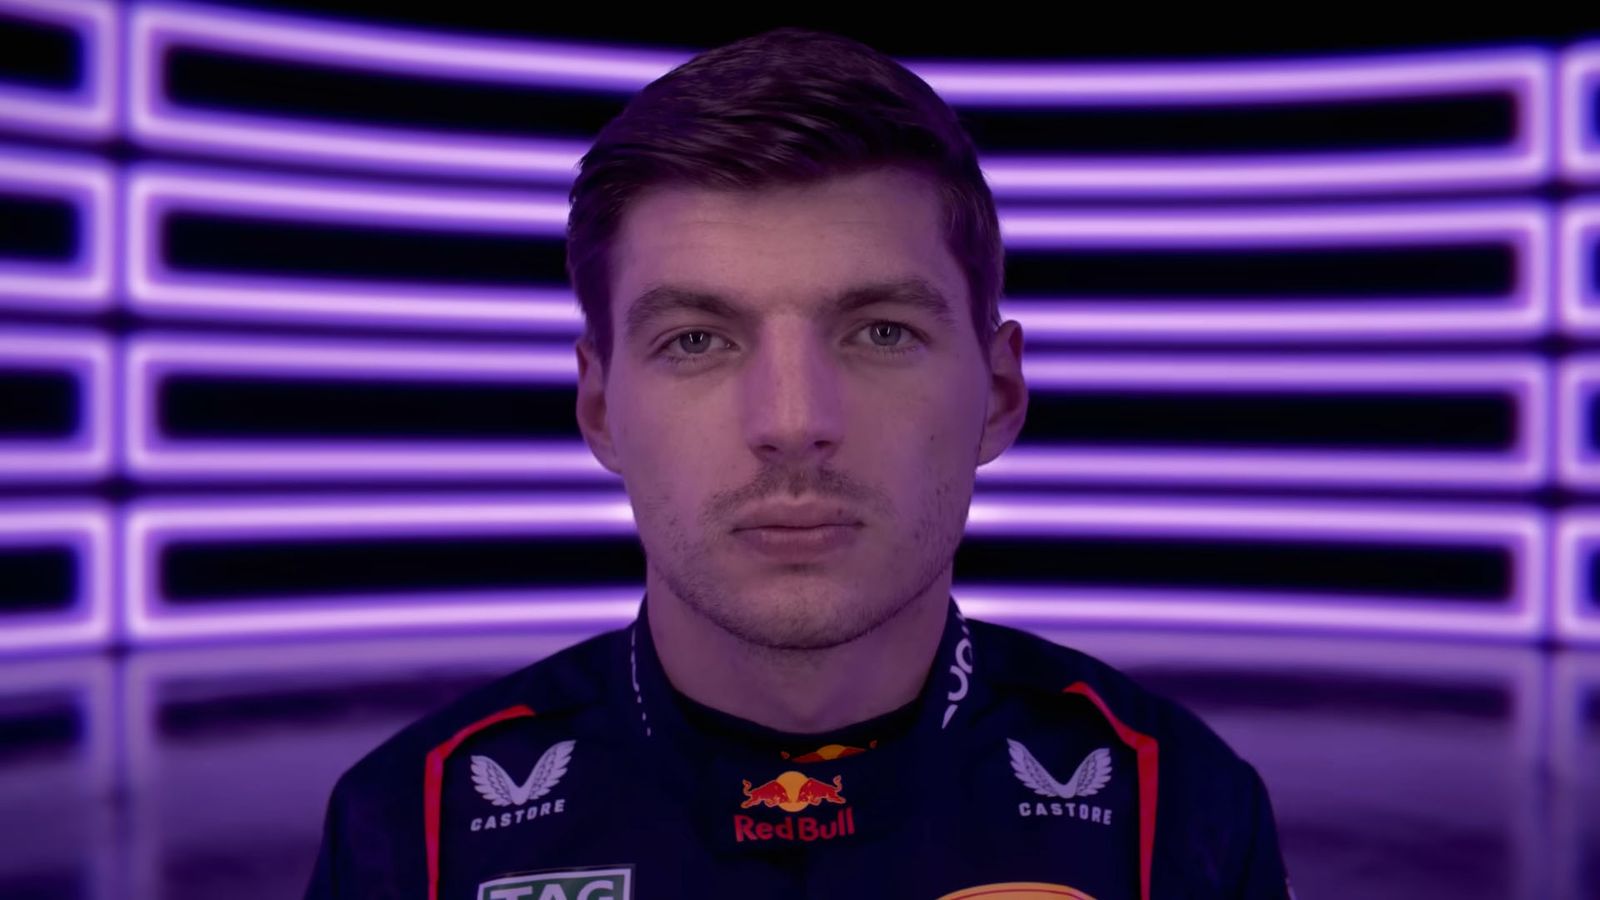 F1 24 Max Verstappen face scan